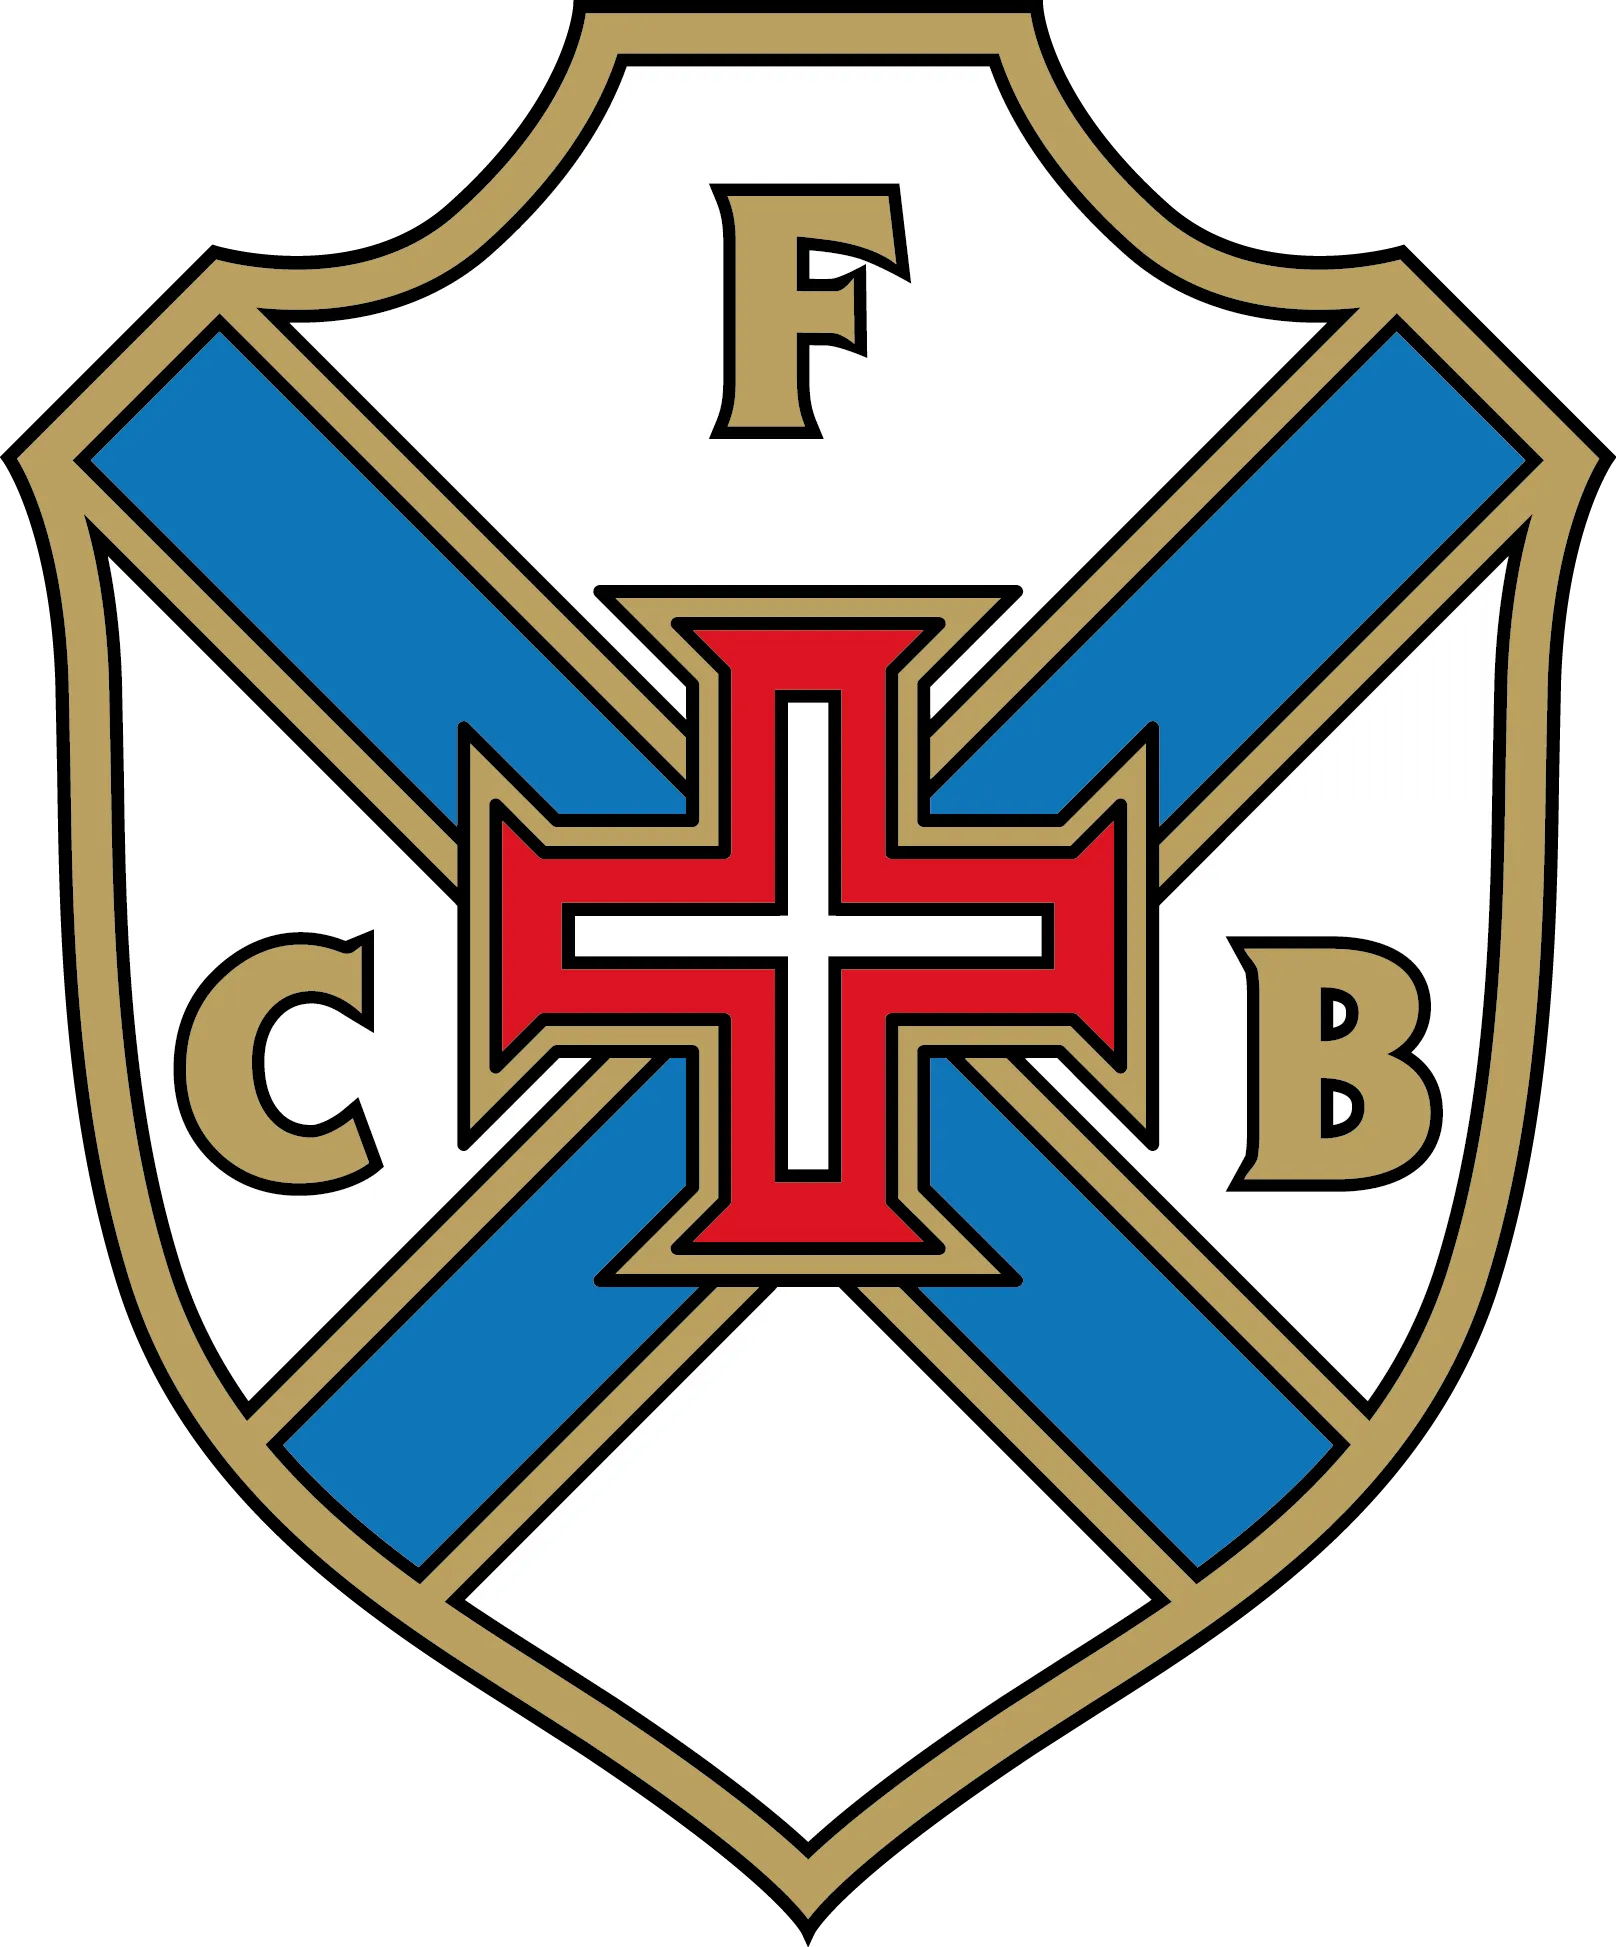 Lịch Sử CLB Belenenses – Câu Lạc Bộ Lâu Đời Của Bồ Đào Nha